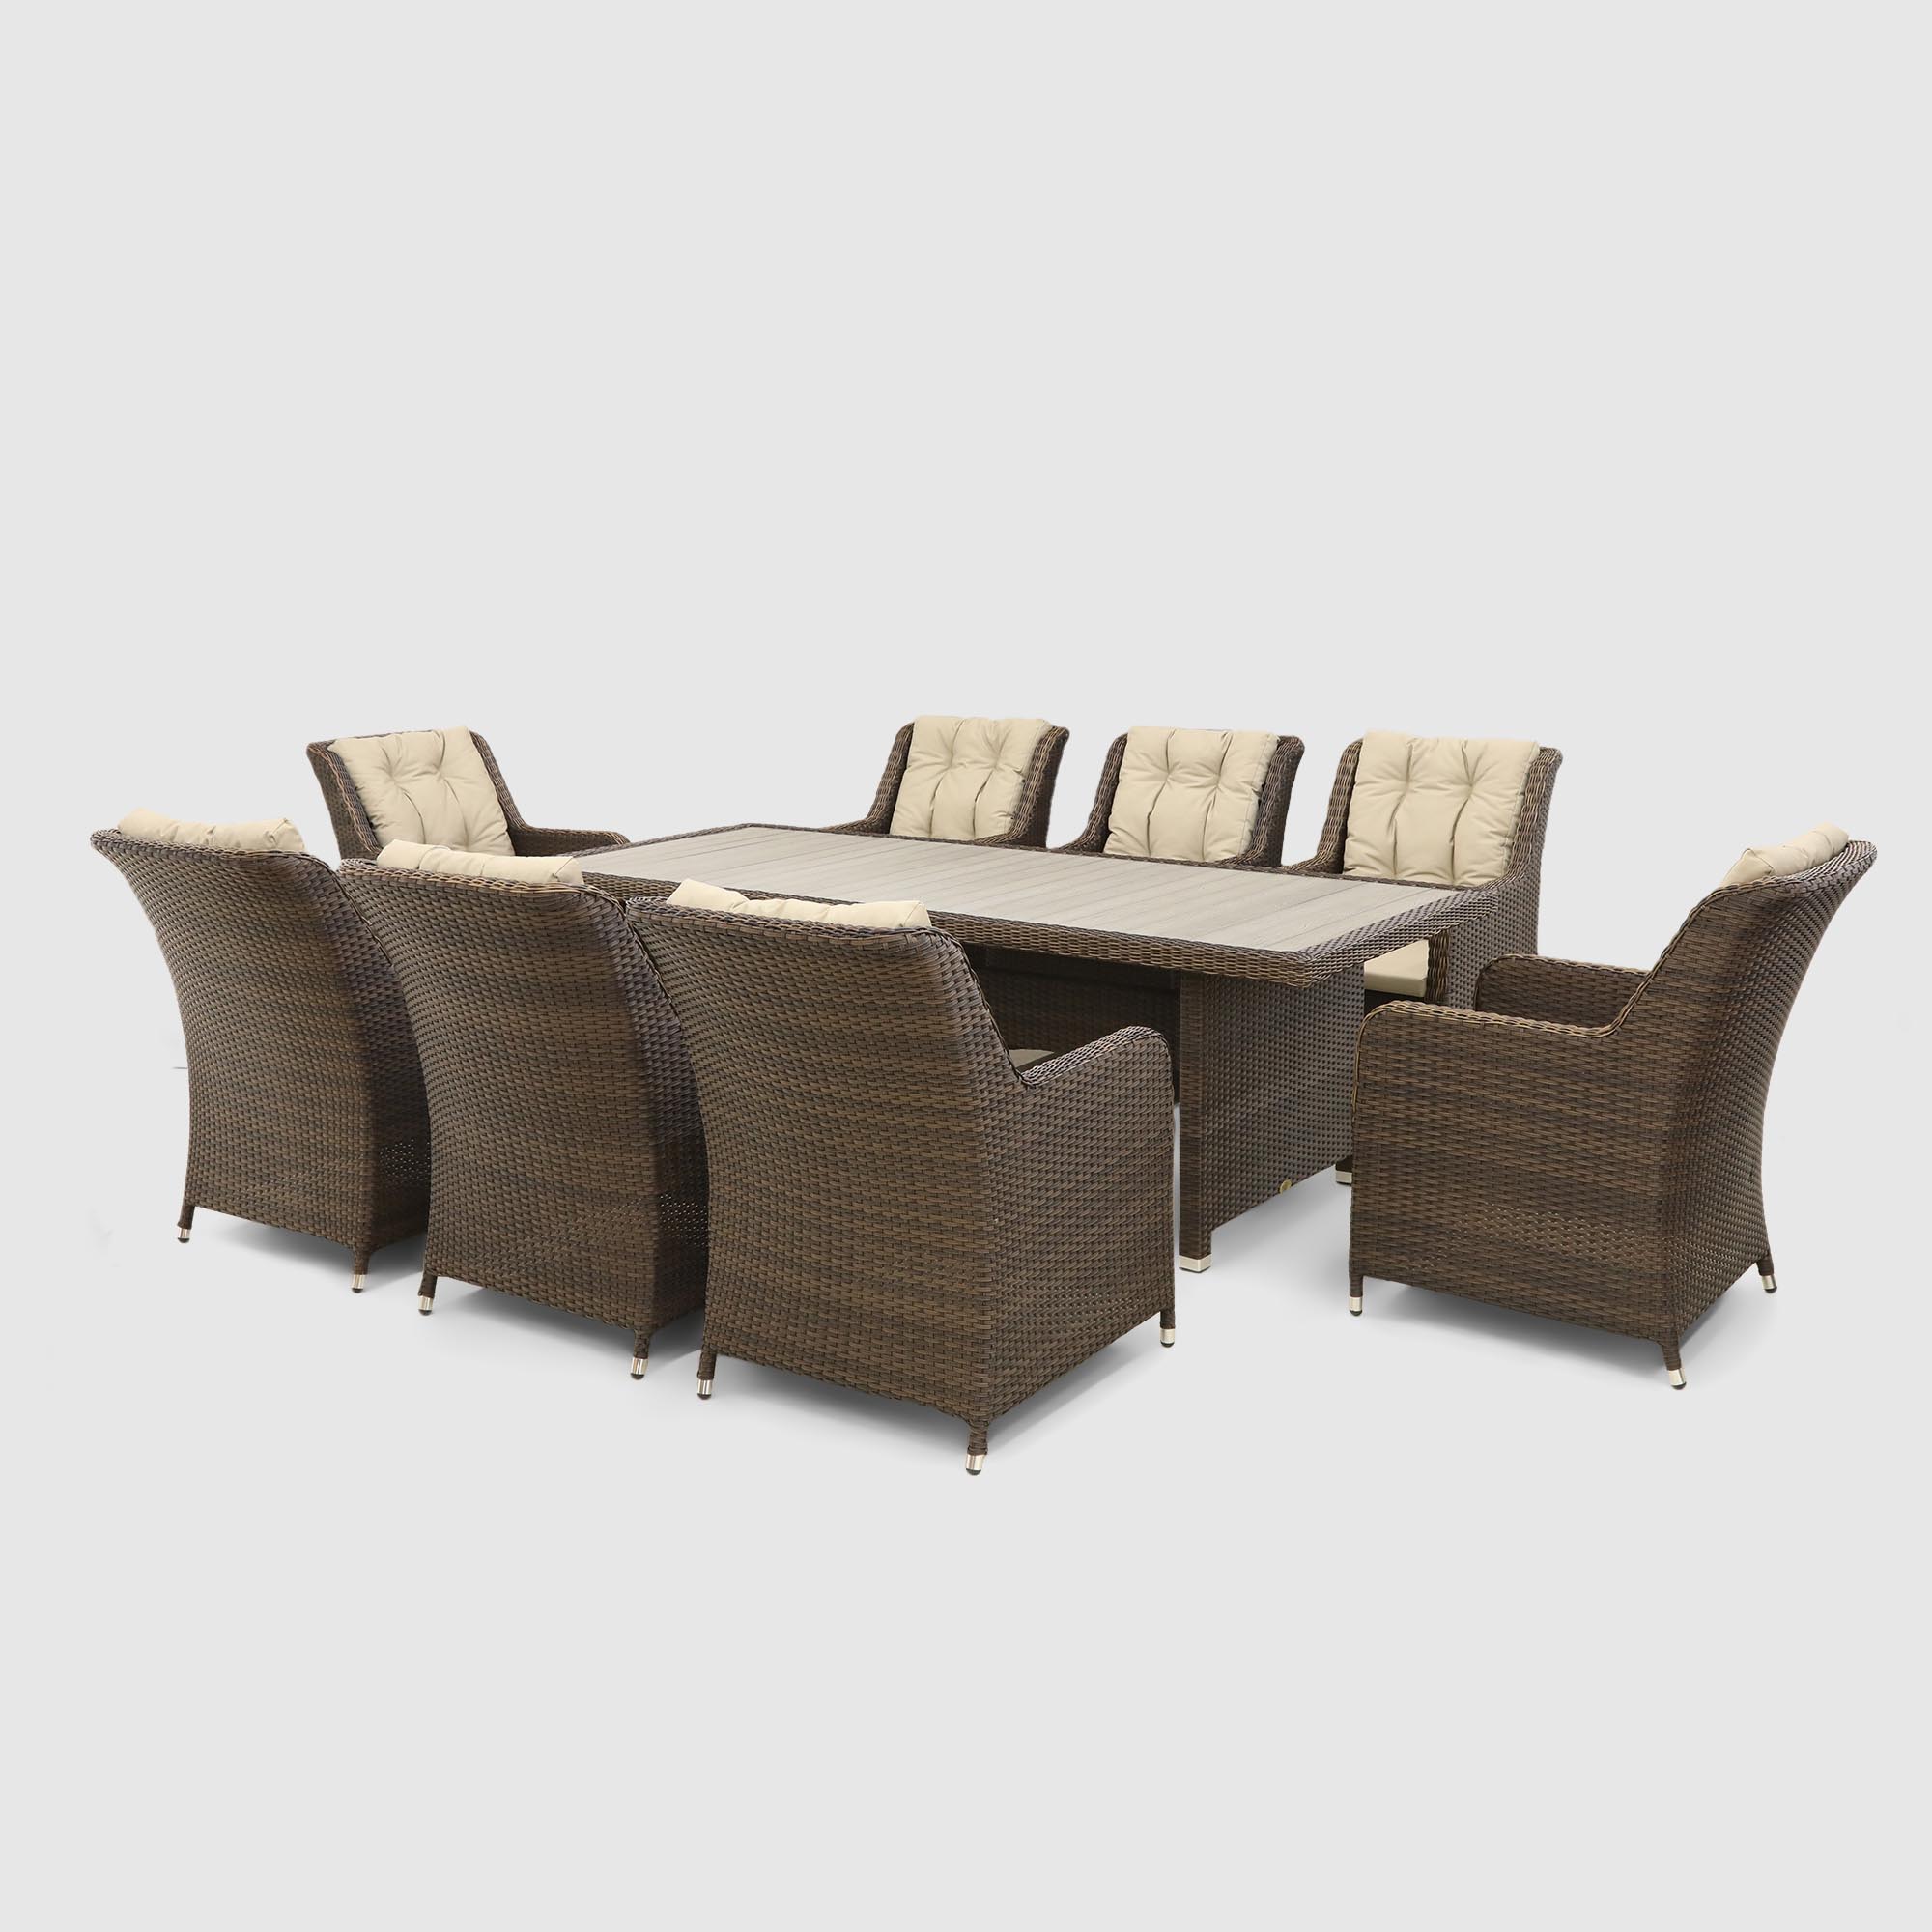 Комплект мебели Ns Rattan Luna коричневый с бежевым 9 предметов, цвет бежевый, размер 70х66х100